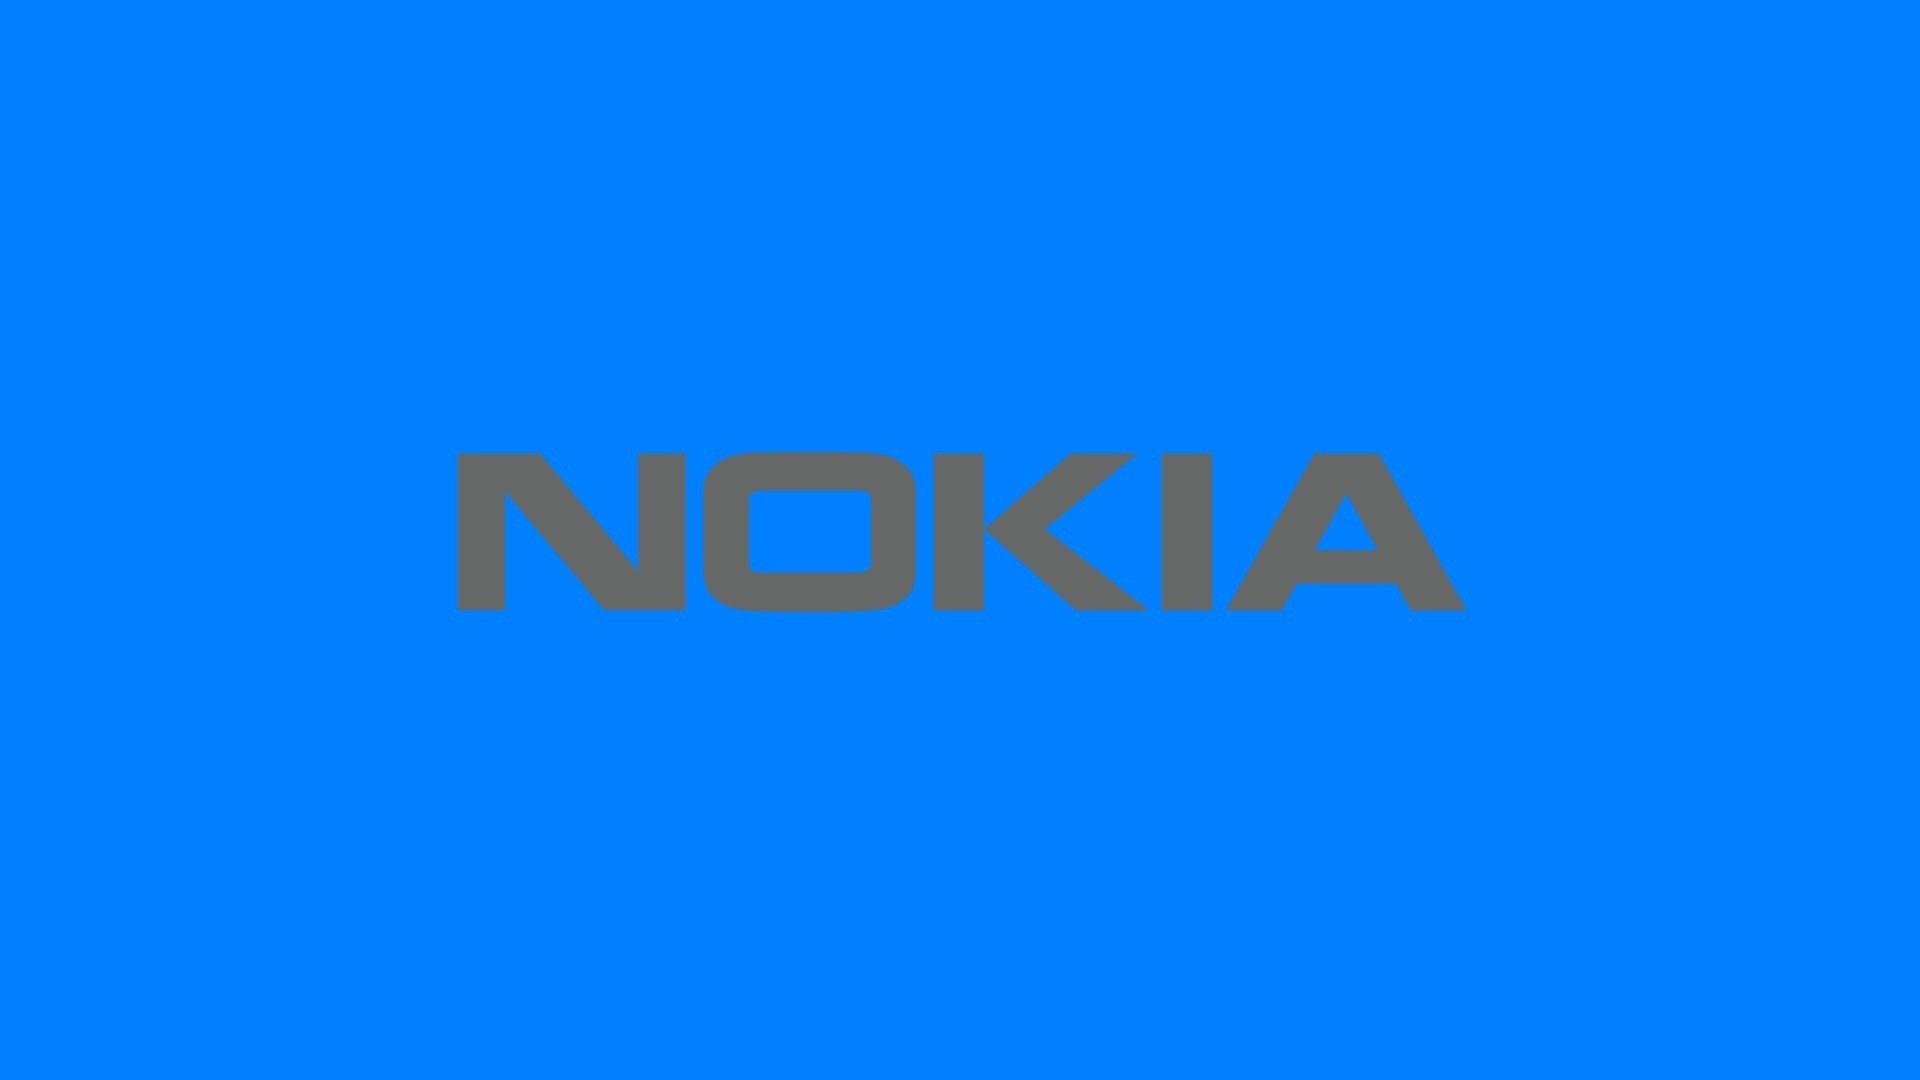 Nokia Wallpaper Logos Image